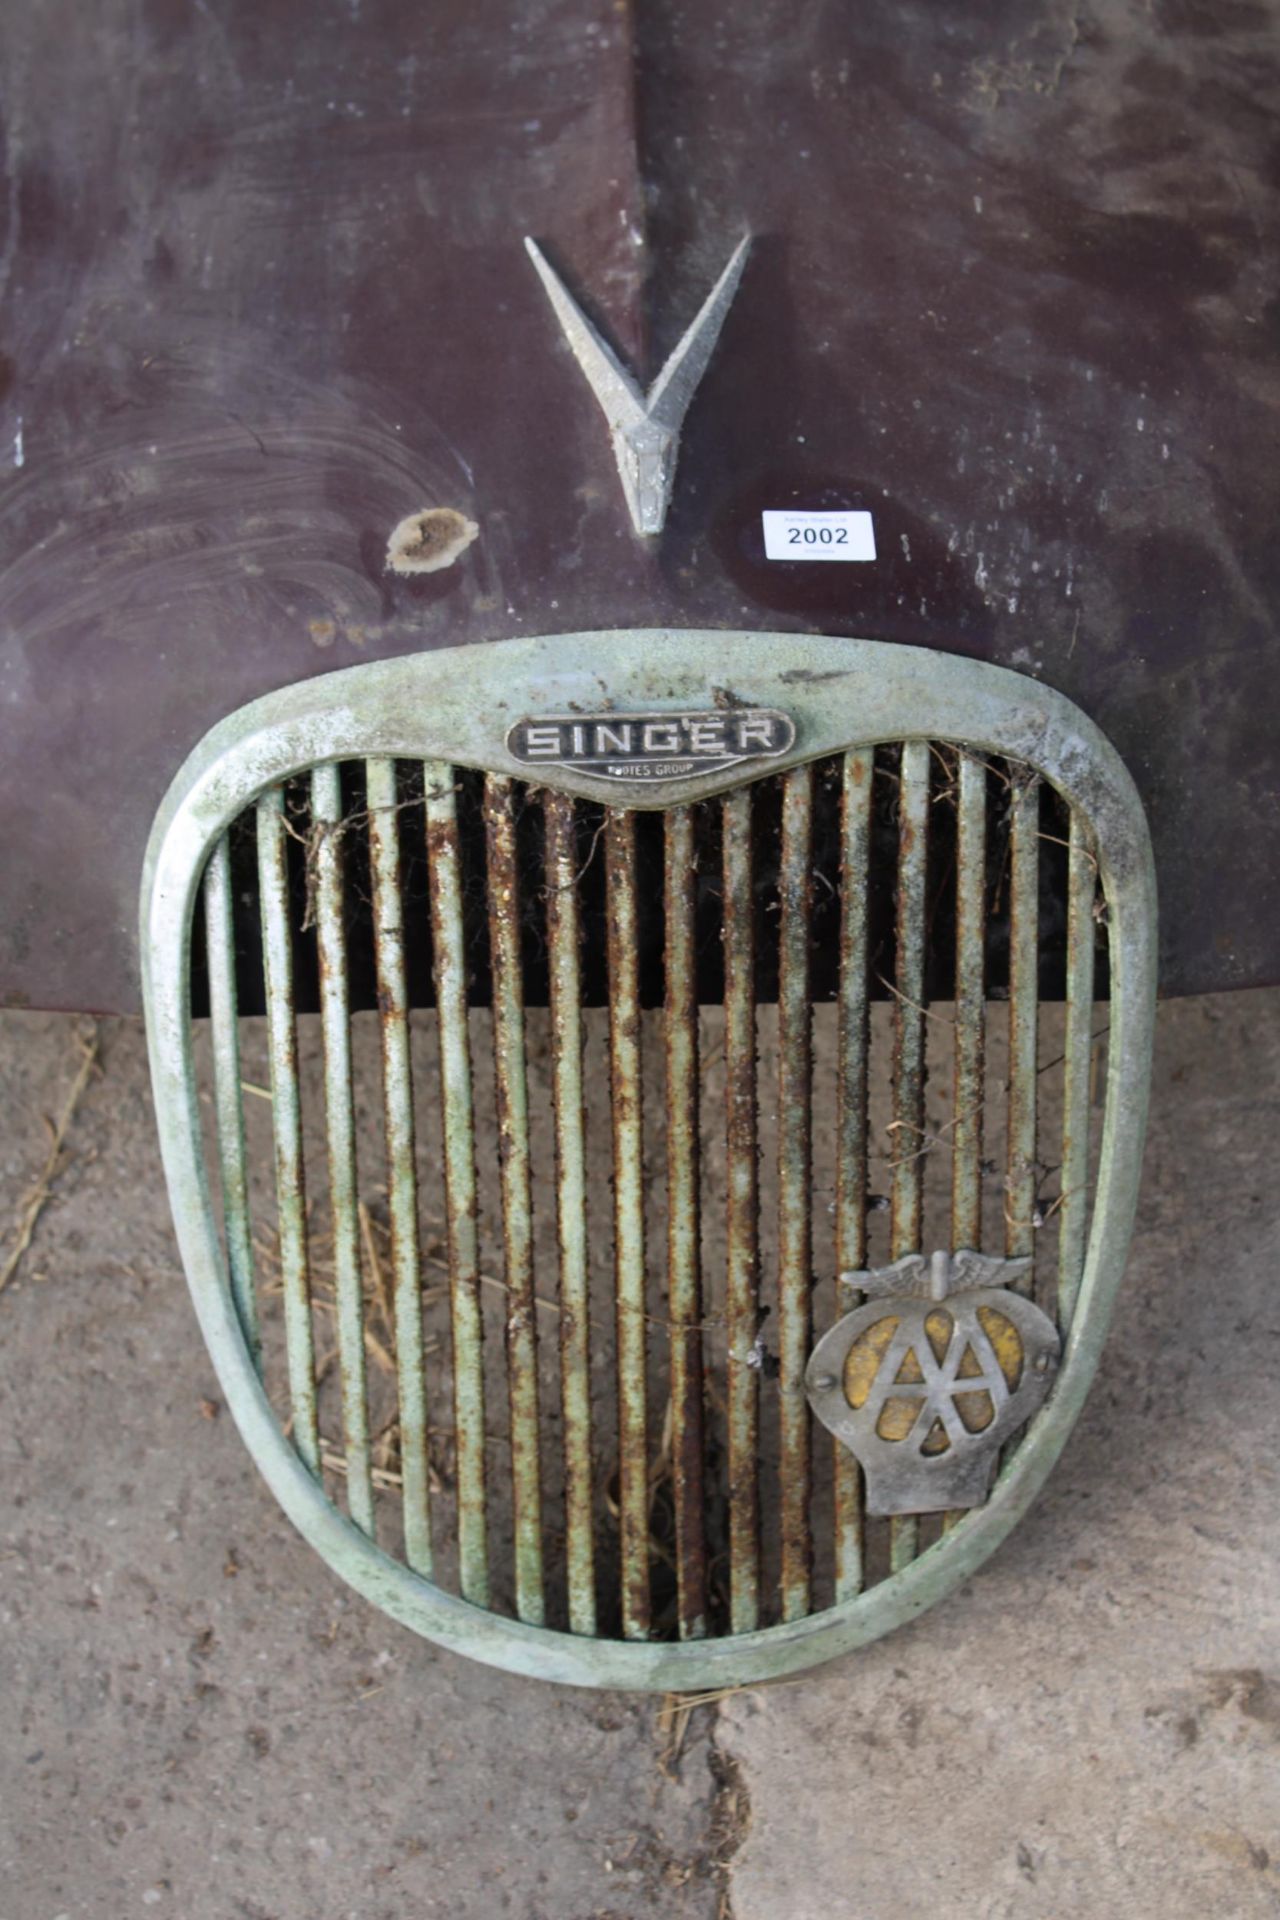 A VINTAGE SINGER GAZELLE CAR BONNET - Image 2 of 3